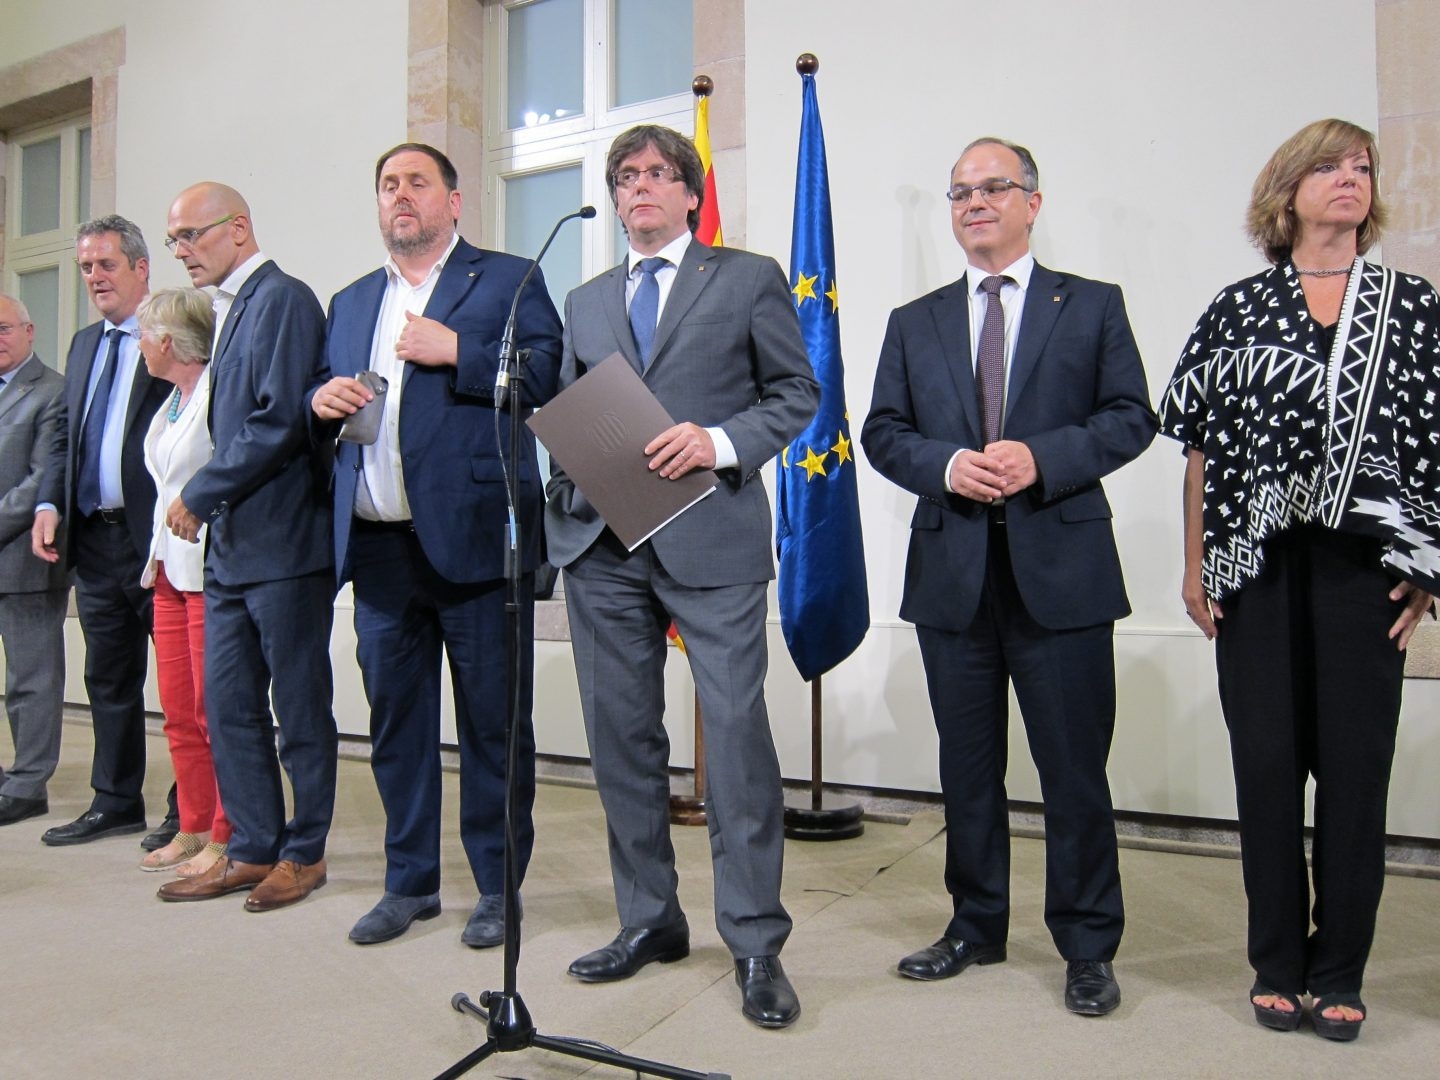 Puigdemont y el resto de miembros de su gobierno, cuando firmaron el decreto de convocatoria y organización del referéndum.